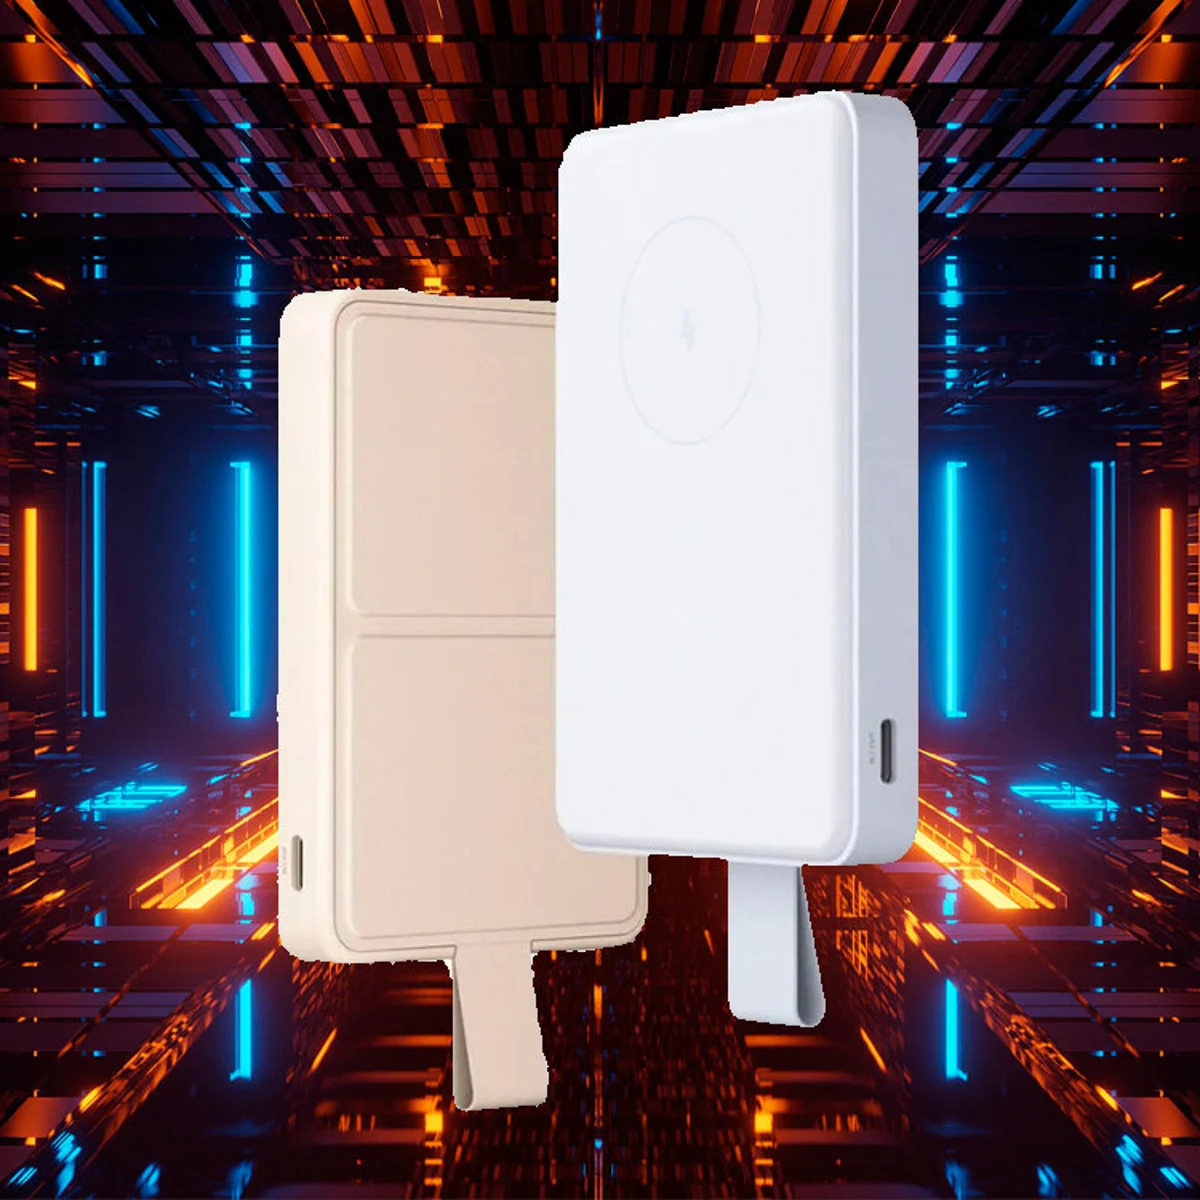 Alternativas a la Apple Battery Pack MagSafe: nueve PowerBanks con carga  inalámbrica magnética para iPhone 12